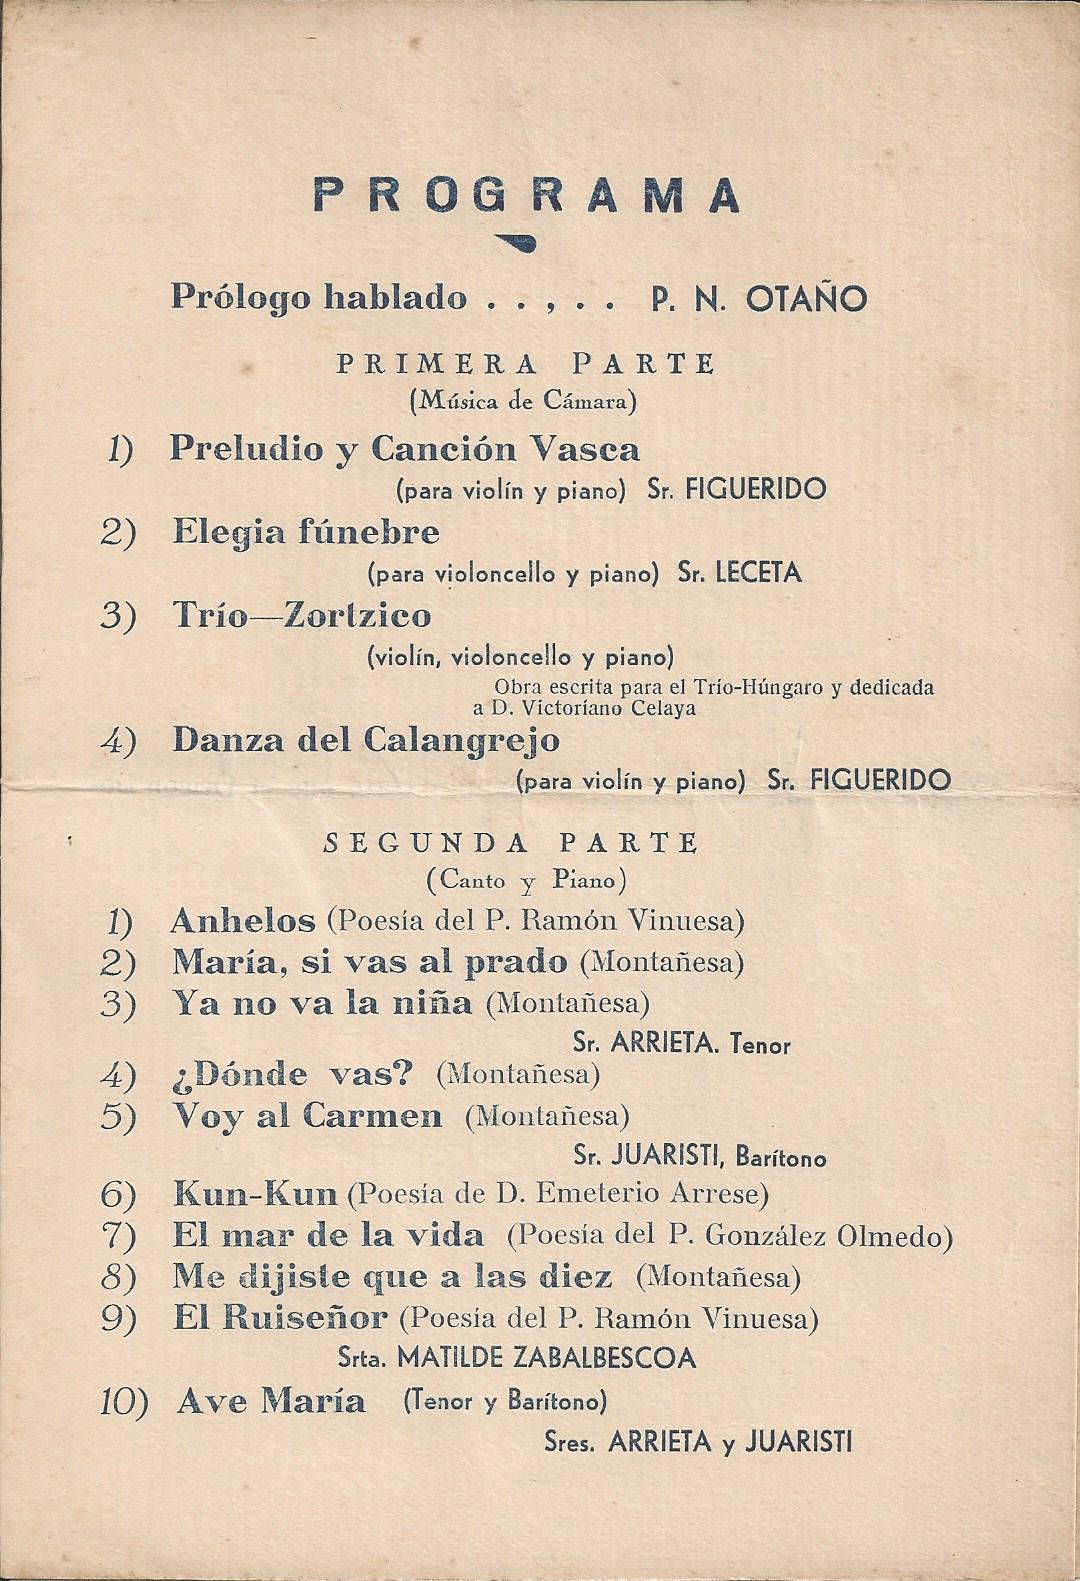 Nemesio Otaño - Programa de concierto del 6 de Junio de 1935 - Página 3 de 4